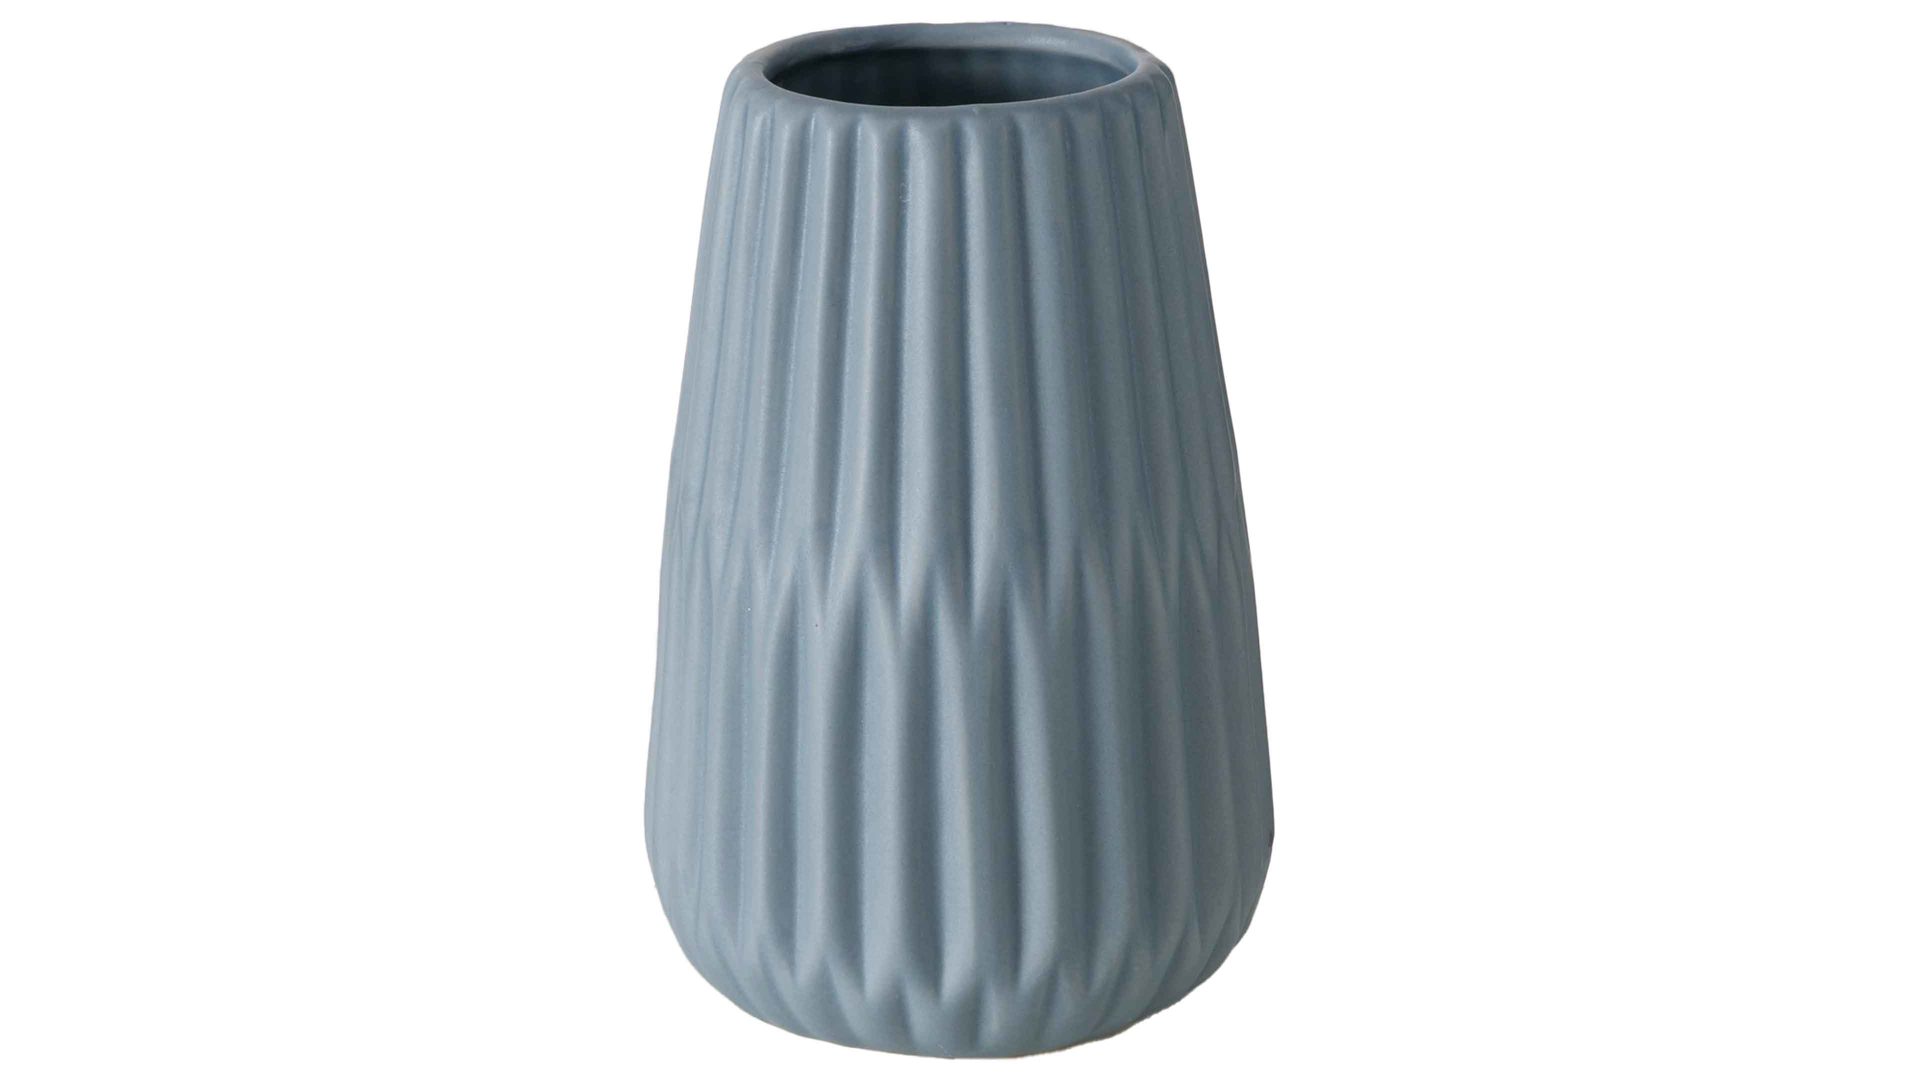 Vase Interliving BEST BUDDYS! aus Keramik in Blau Interliving BEST BUDDYS! Vase Esko mattblaues Porzellan - Durchmesser ca. 9 cm